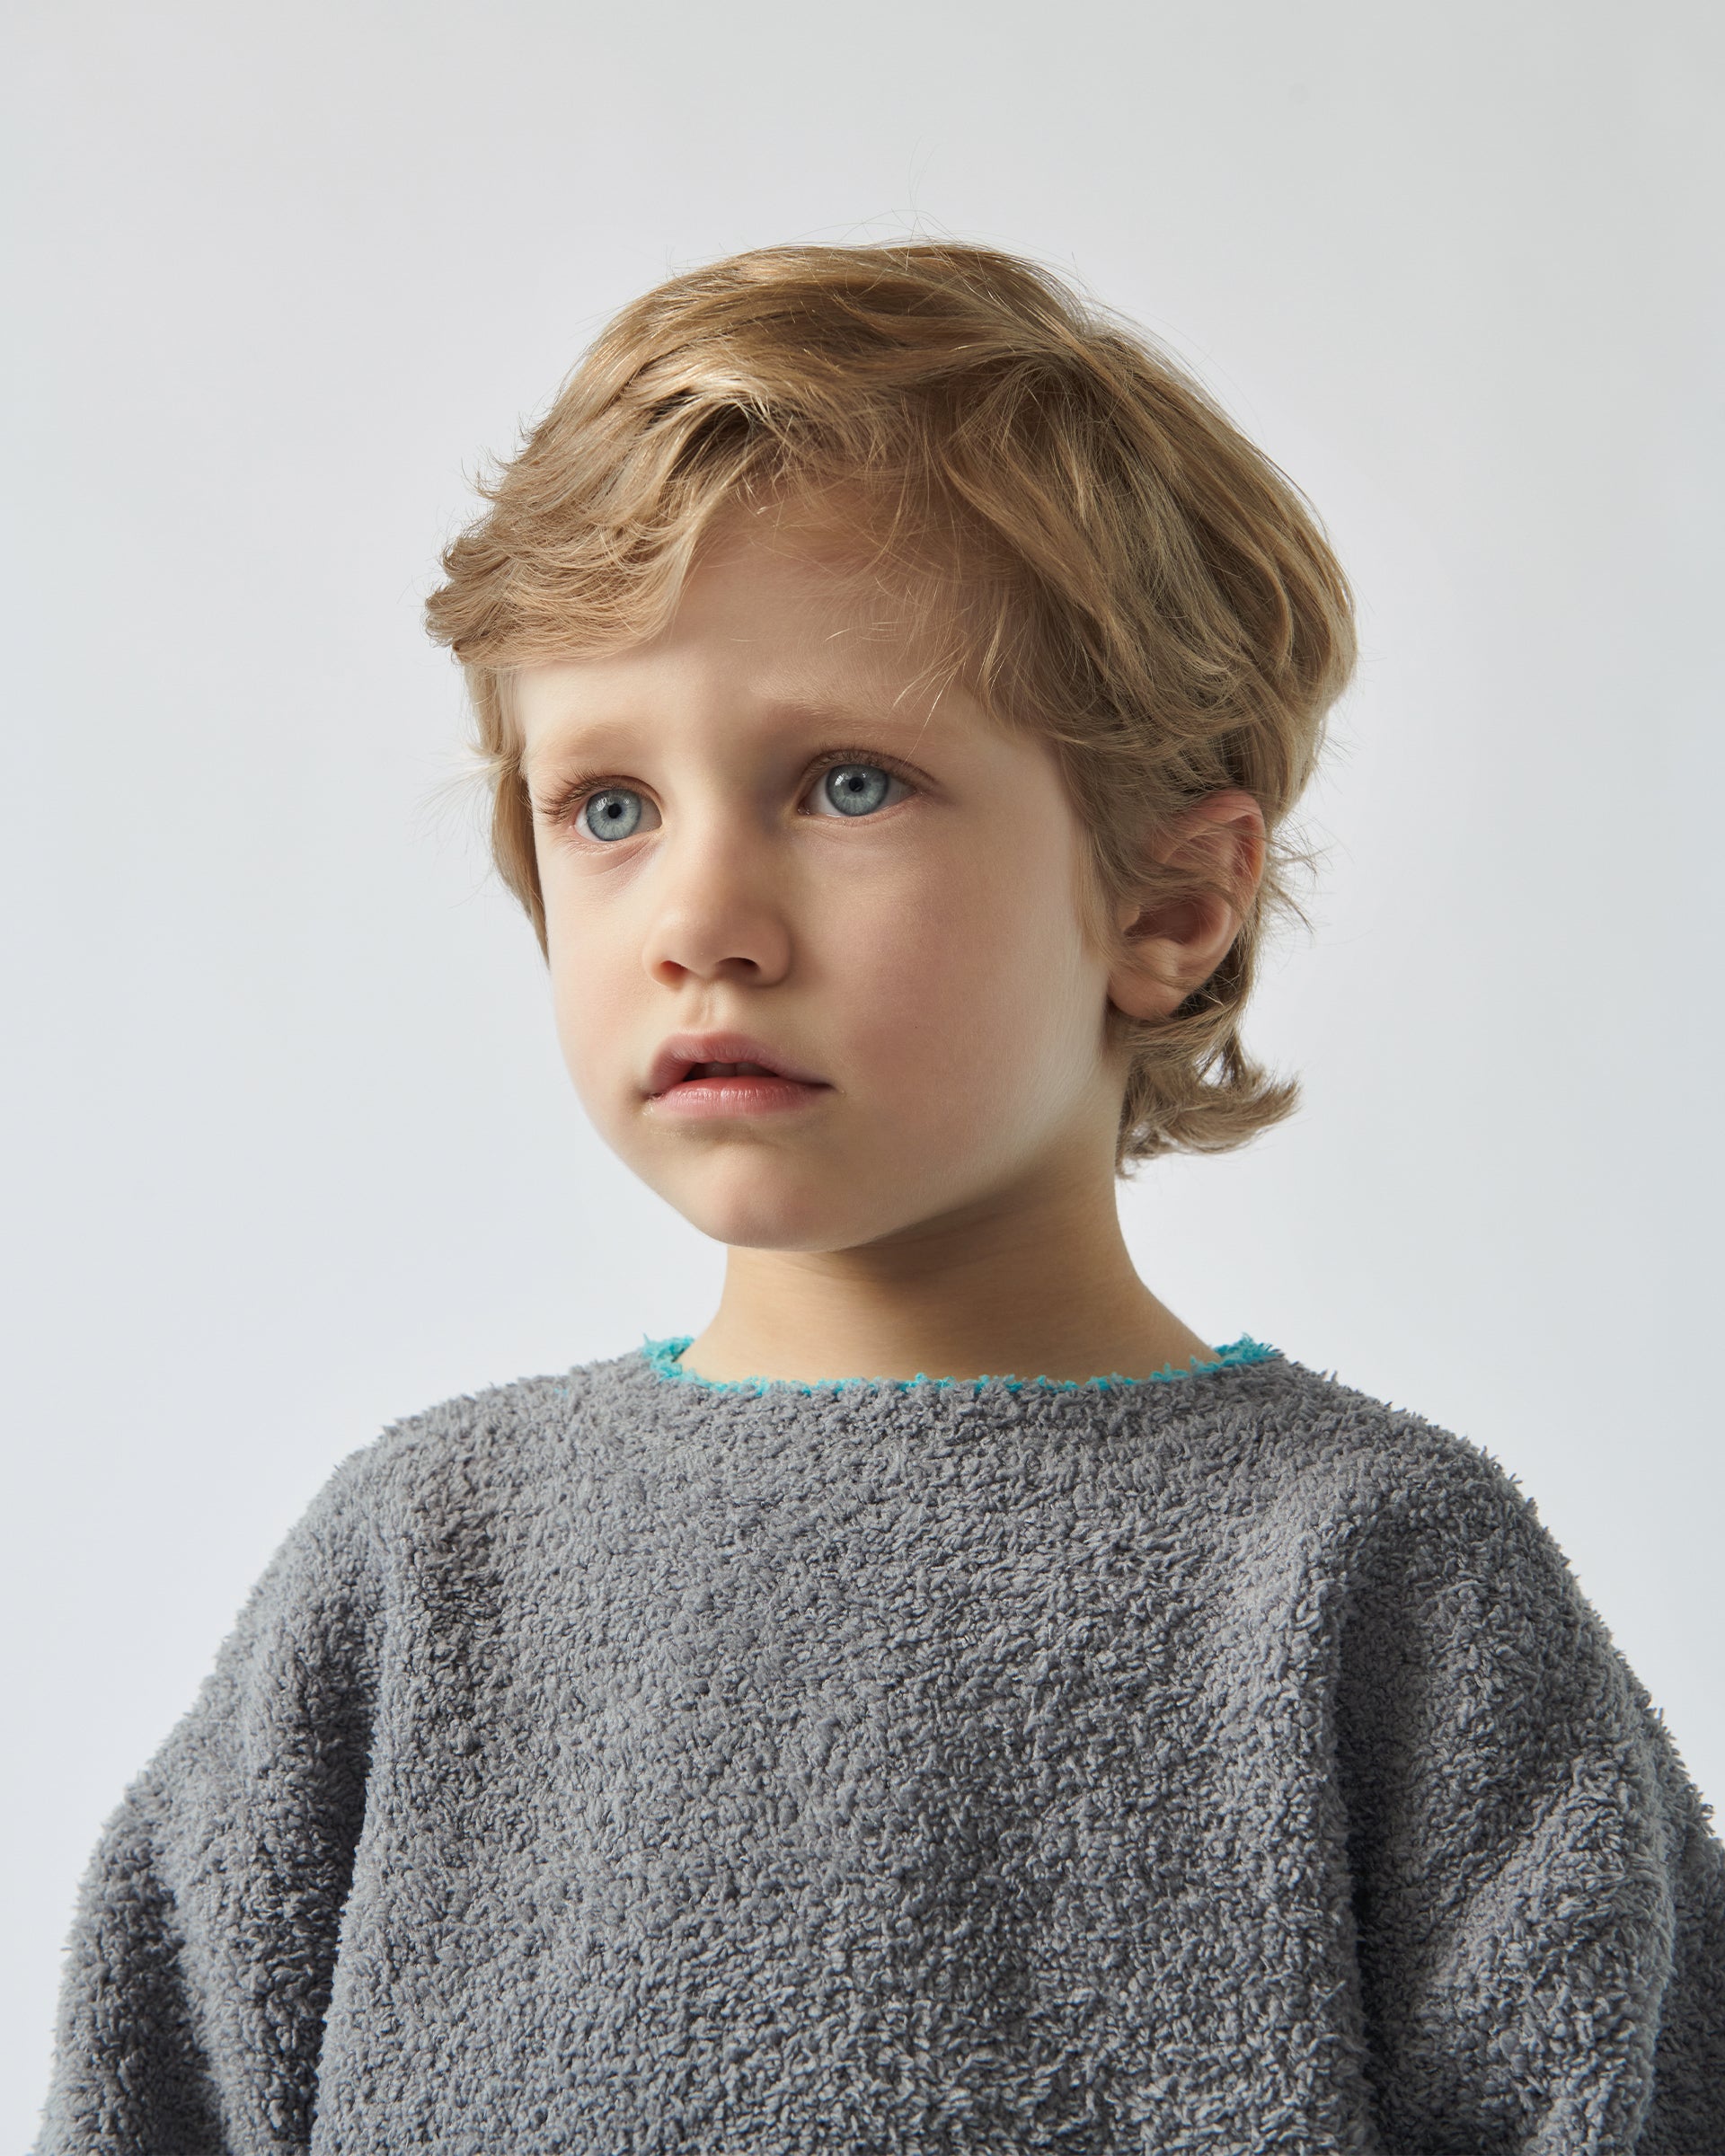 7 A.M. Enfant Fuzzy Boxy Sweater - Gris - Twinkle Twinkle Little One